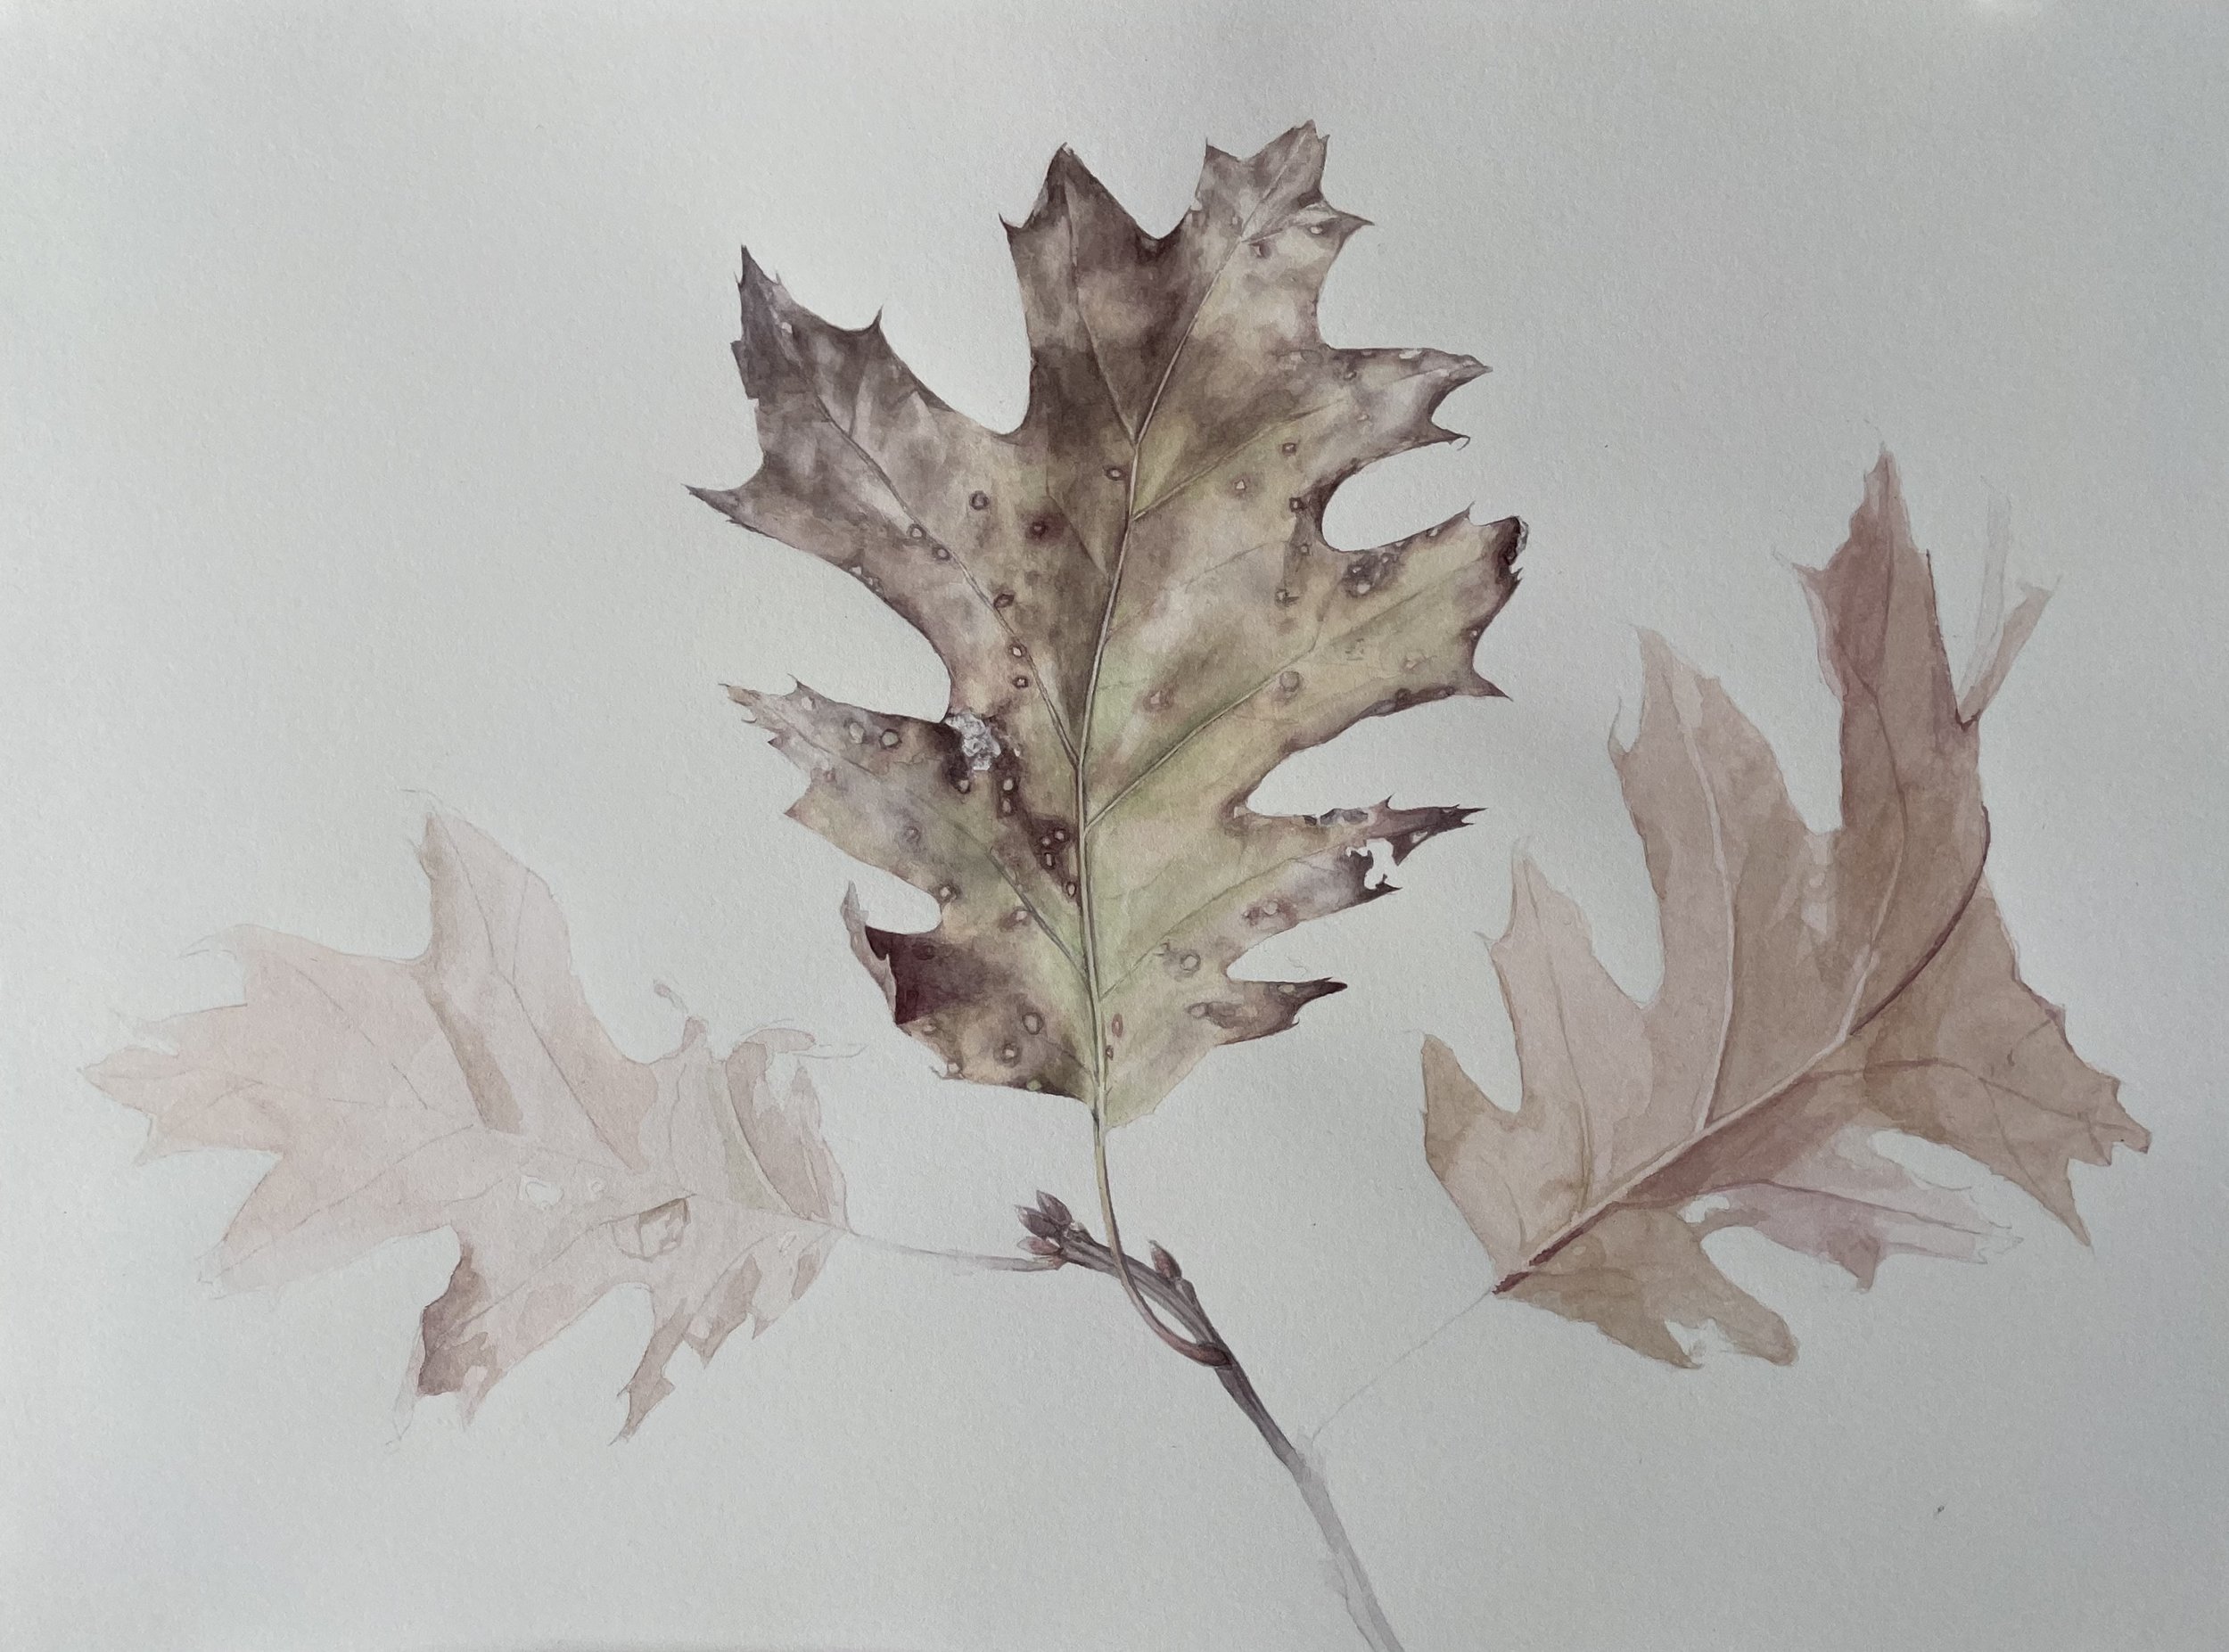   Oak leaf   Watercolor on paper  14 in x 10 in 